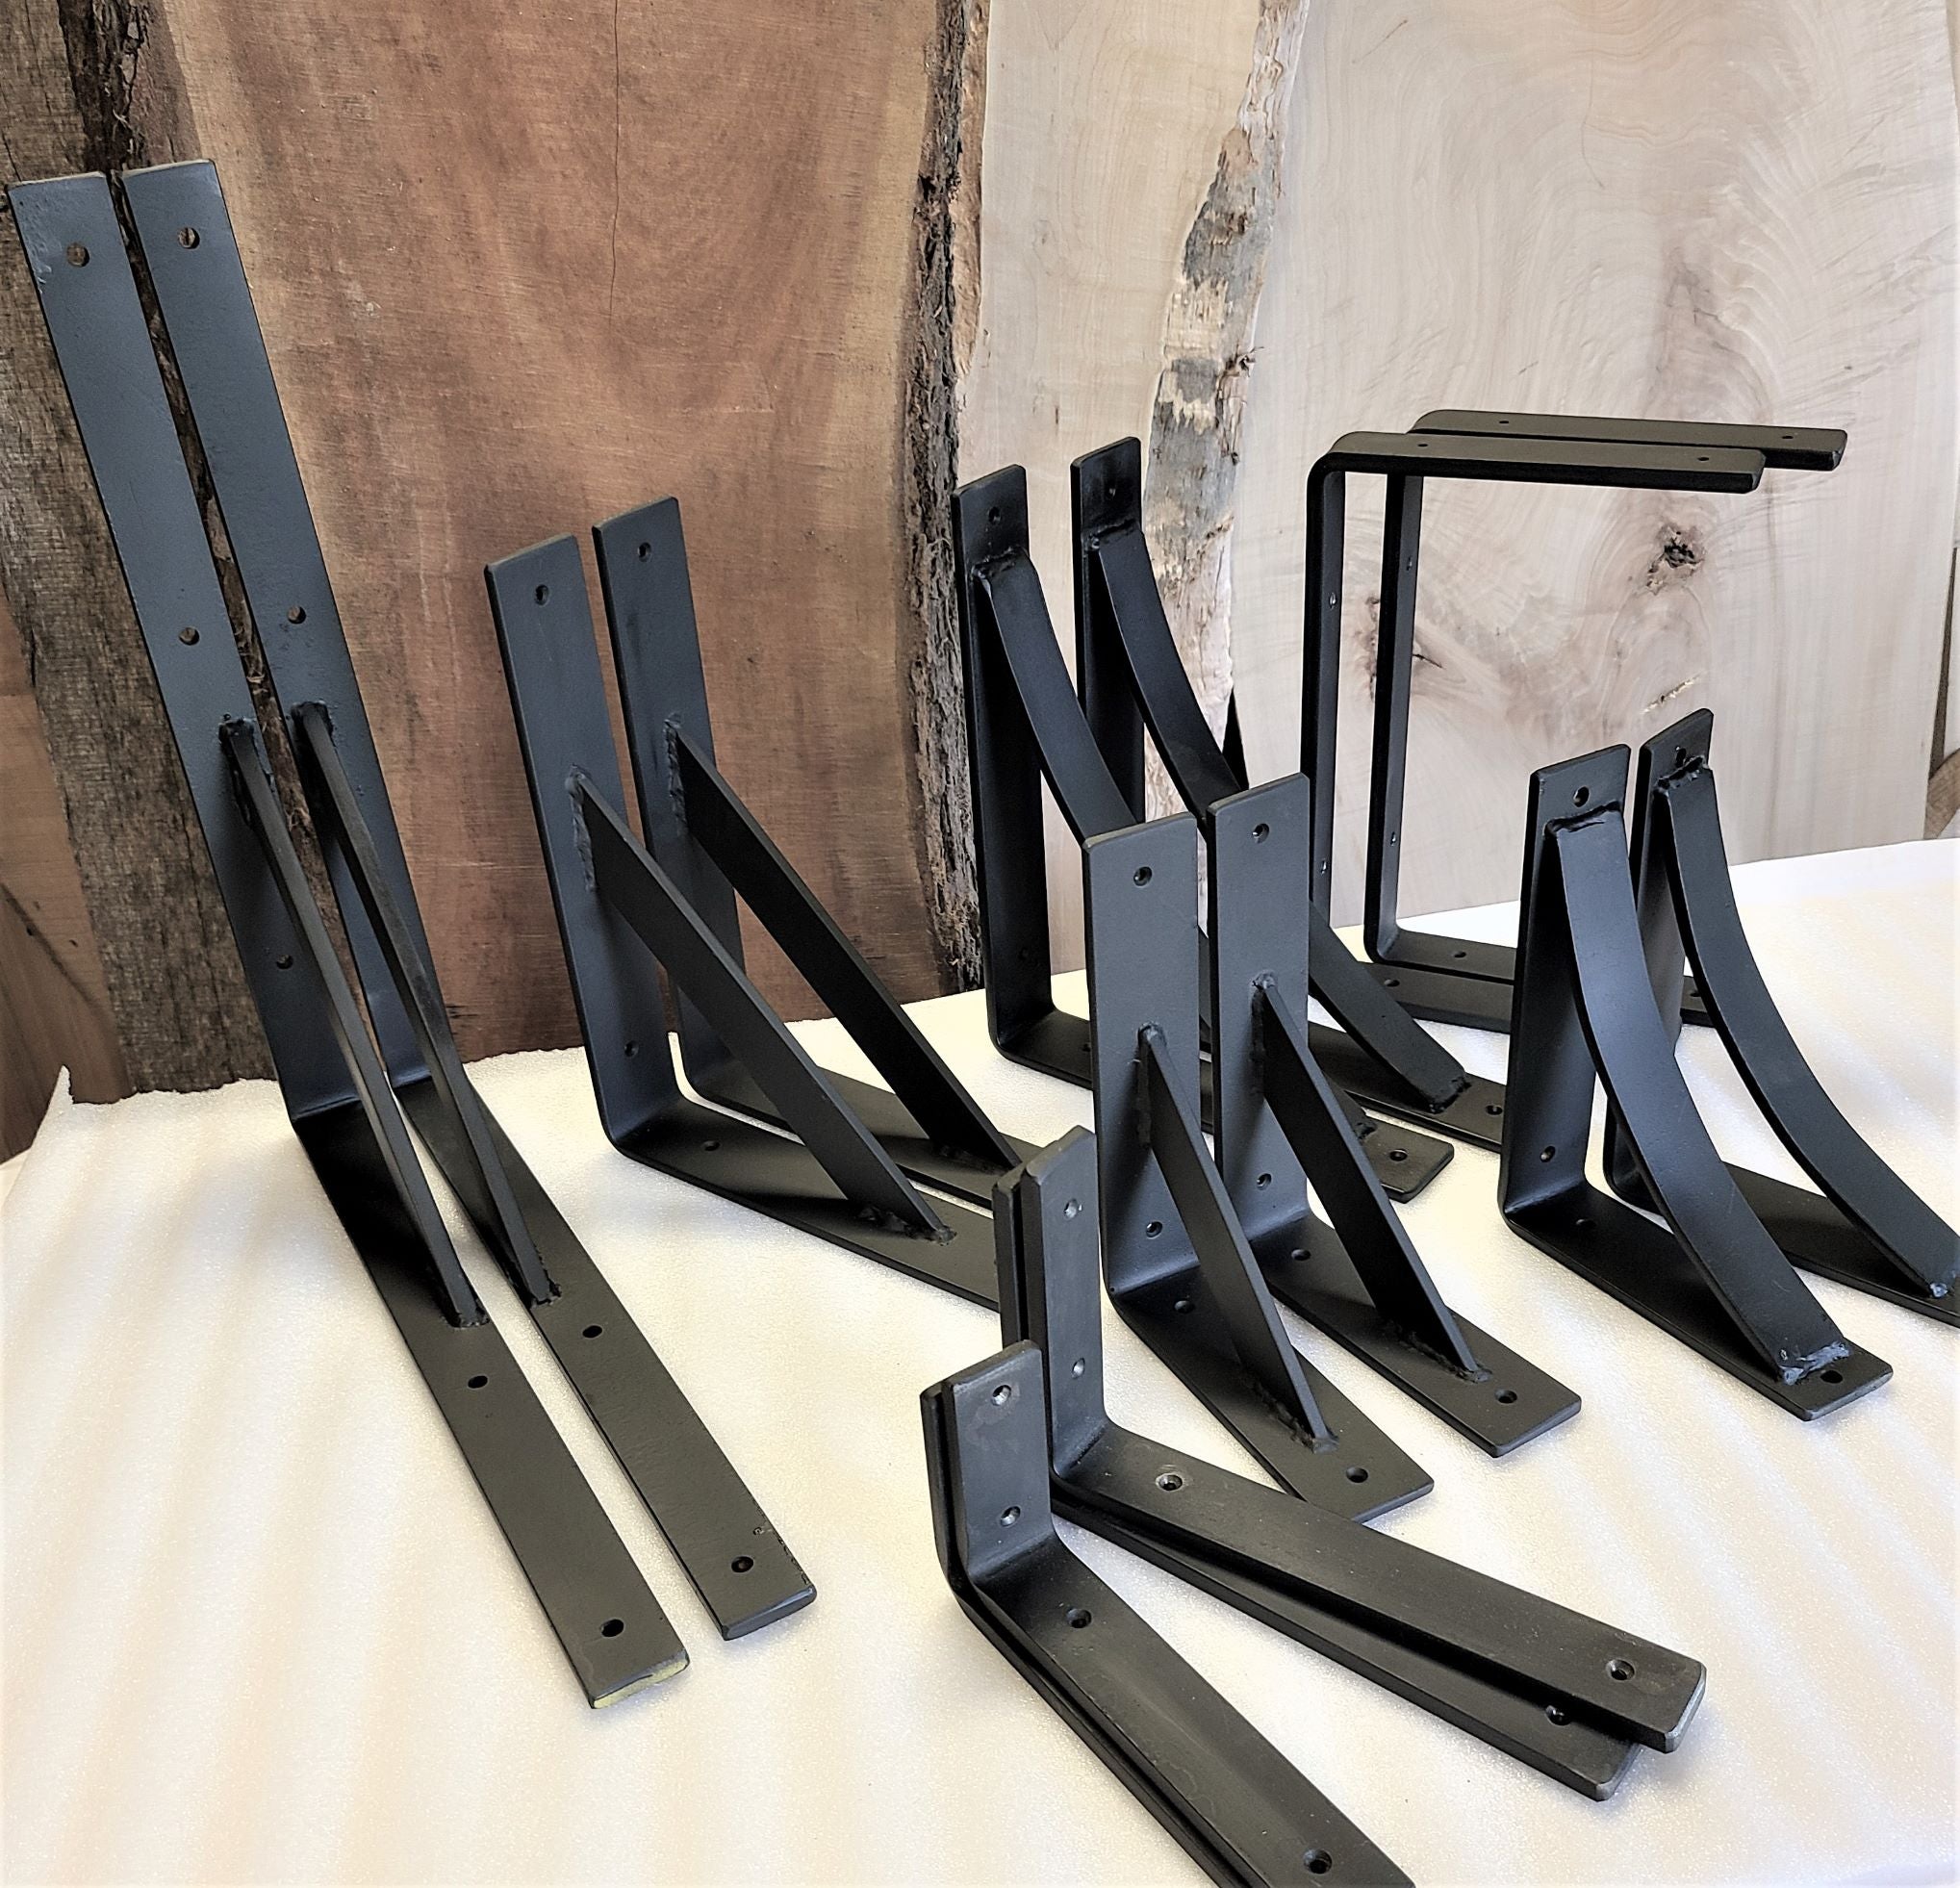 Steel Shelf Brackets for wood shelving, bathroom shelving, kitchen shelving